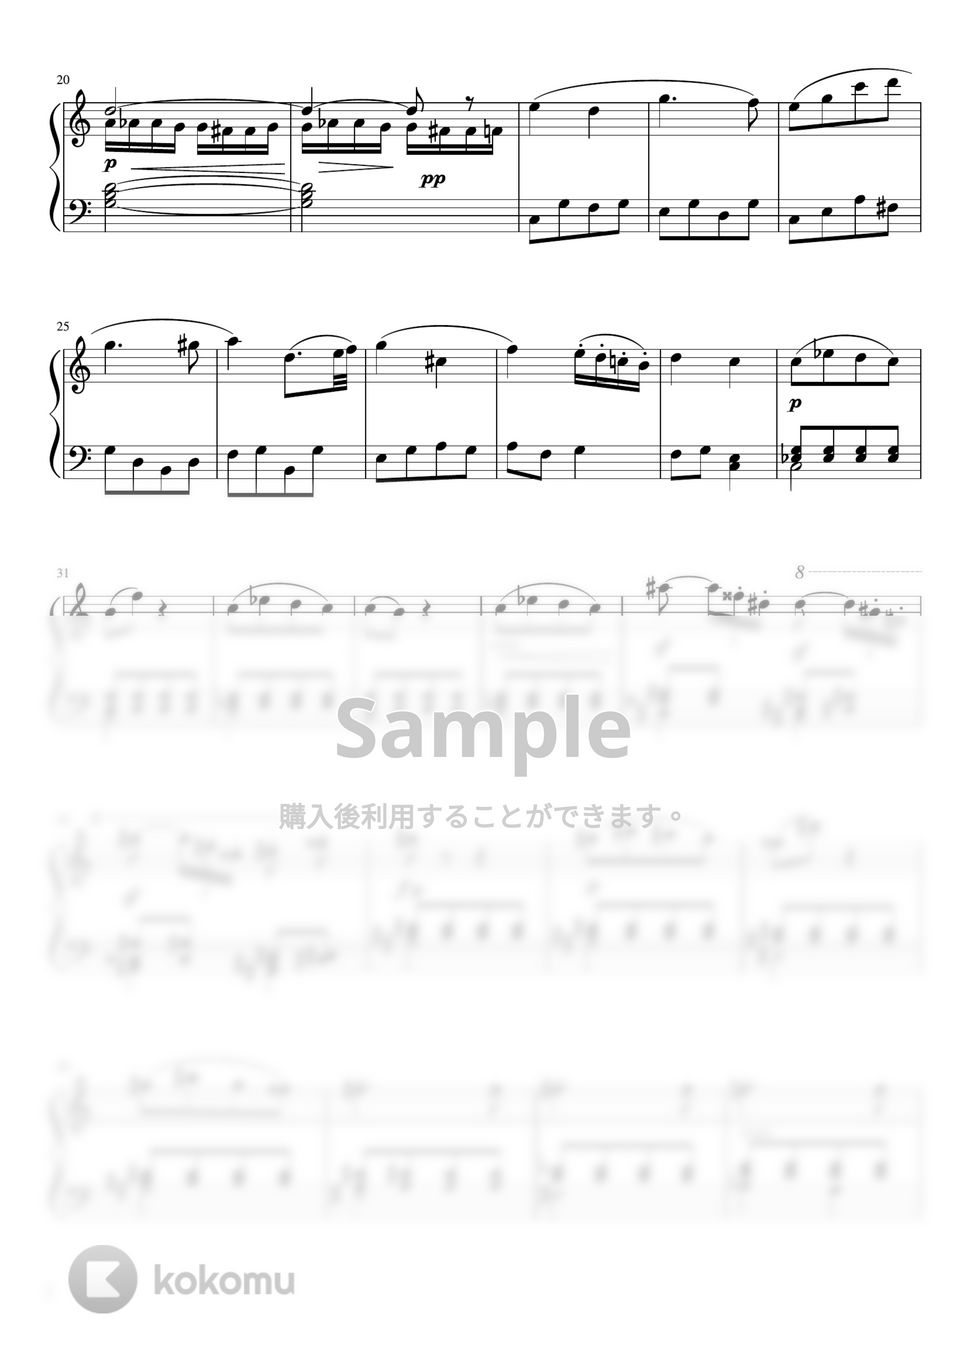 ベートーヴェン - ピアノソナタ第8番第2楽章「悲愴」 (C・ピアノソロ中級) by pfkaori